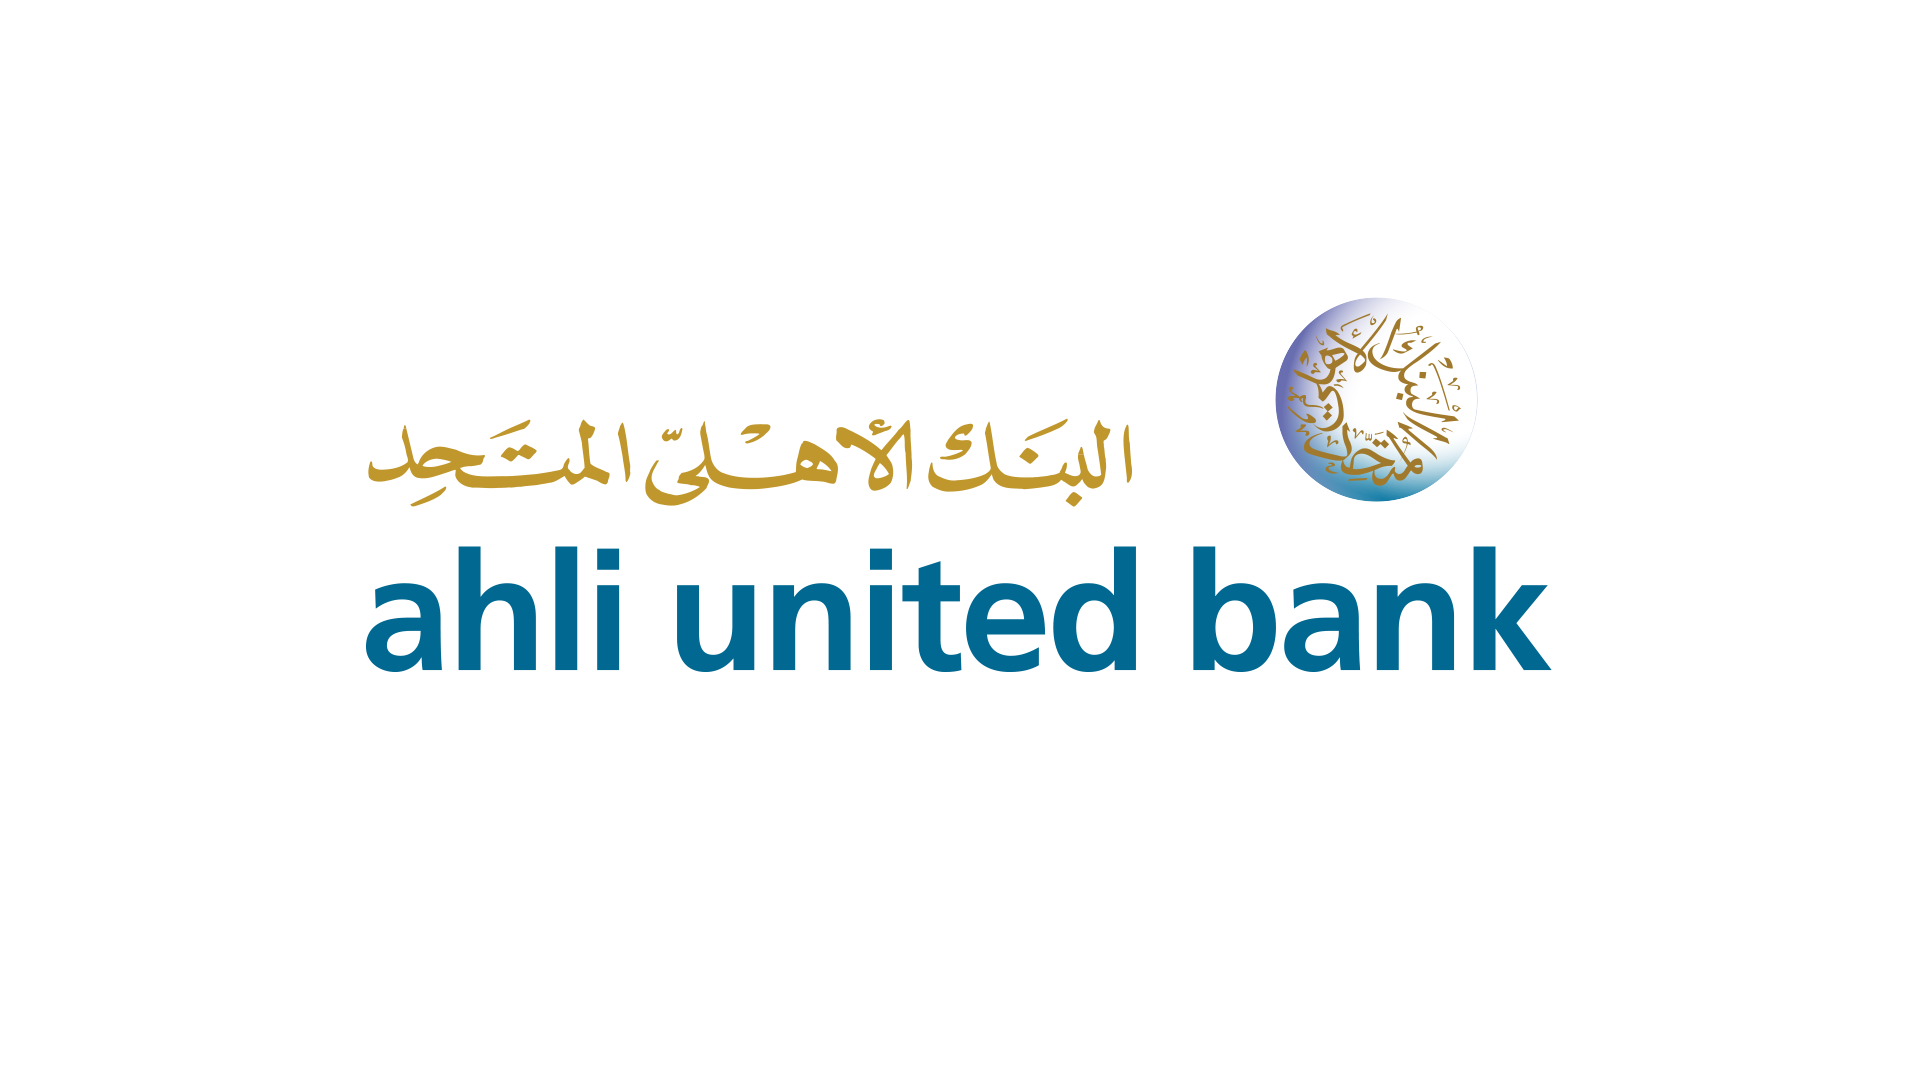 البنك الأهلي المتحد - مصر راعي بلاتيني للمؤتمر الدولي لخبراء الضمان الاجتماعي